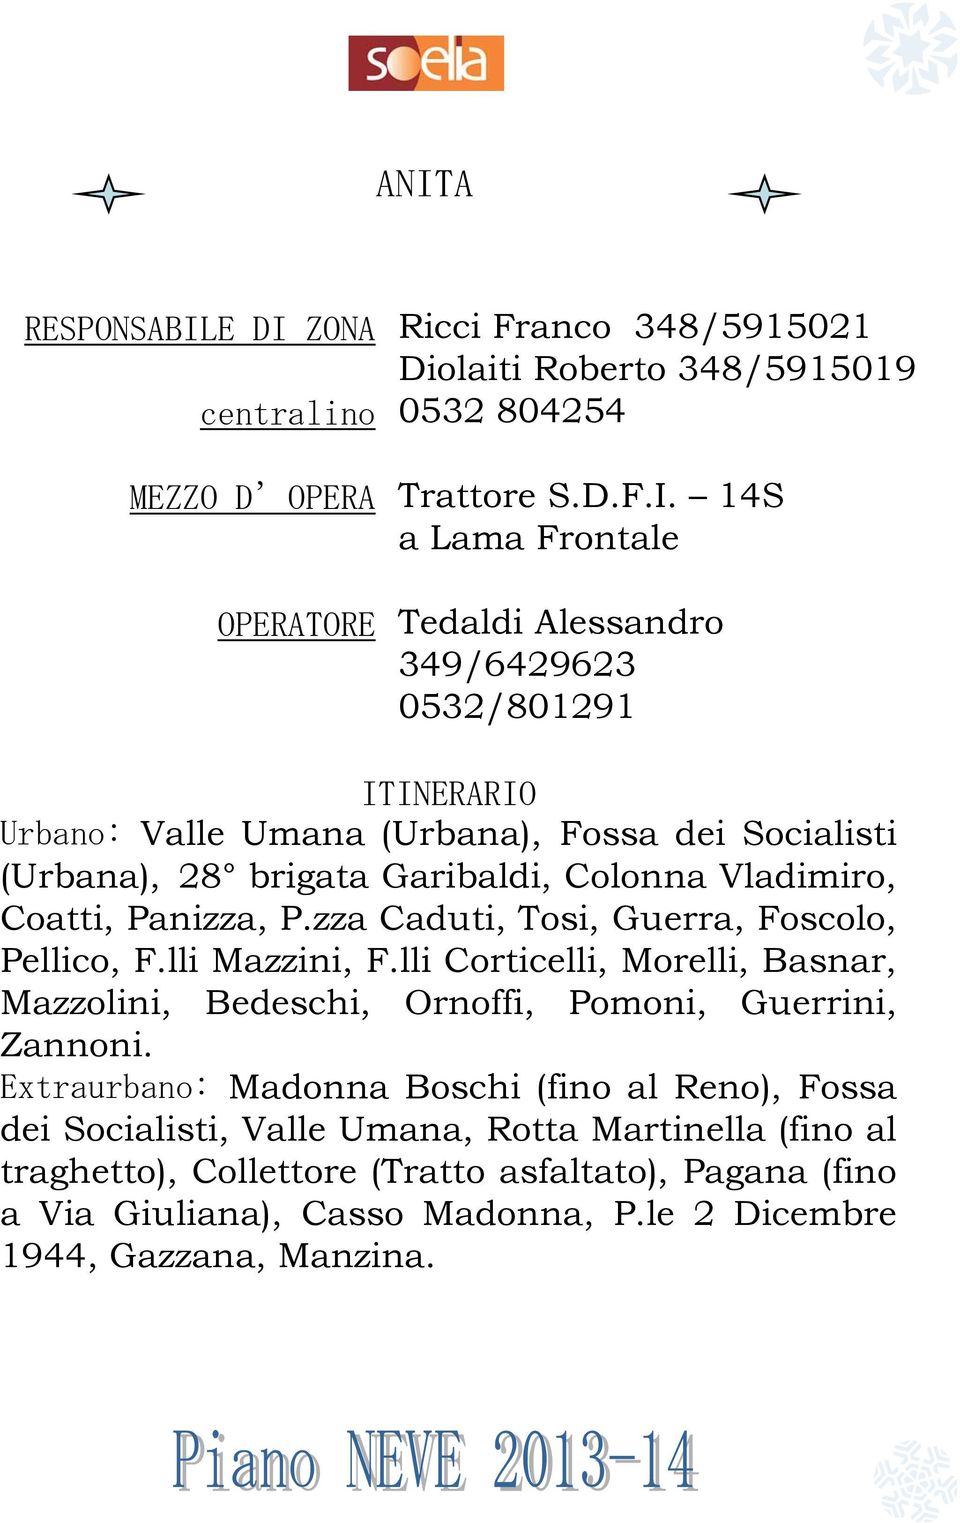 lli Corticelli, Morelli, Basnar, Mazzolini, Bedeschi, Ornoffi, Pomoni, Guerrini, Zannoni.